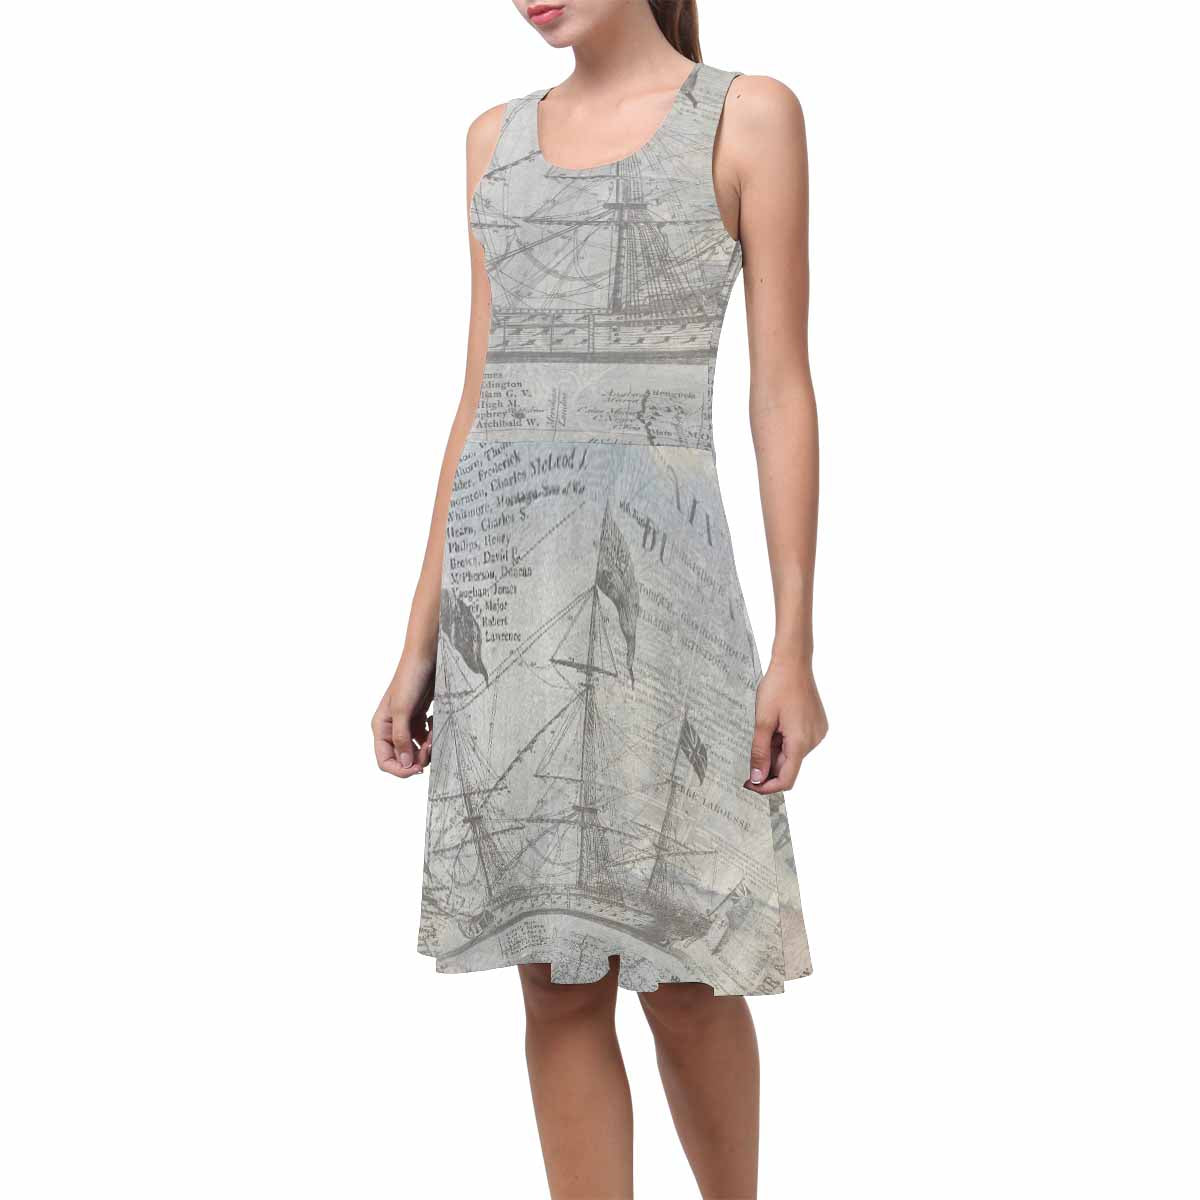 Antique General summer dress, MODEL 09534, design 33